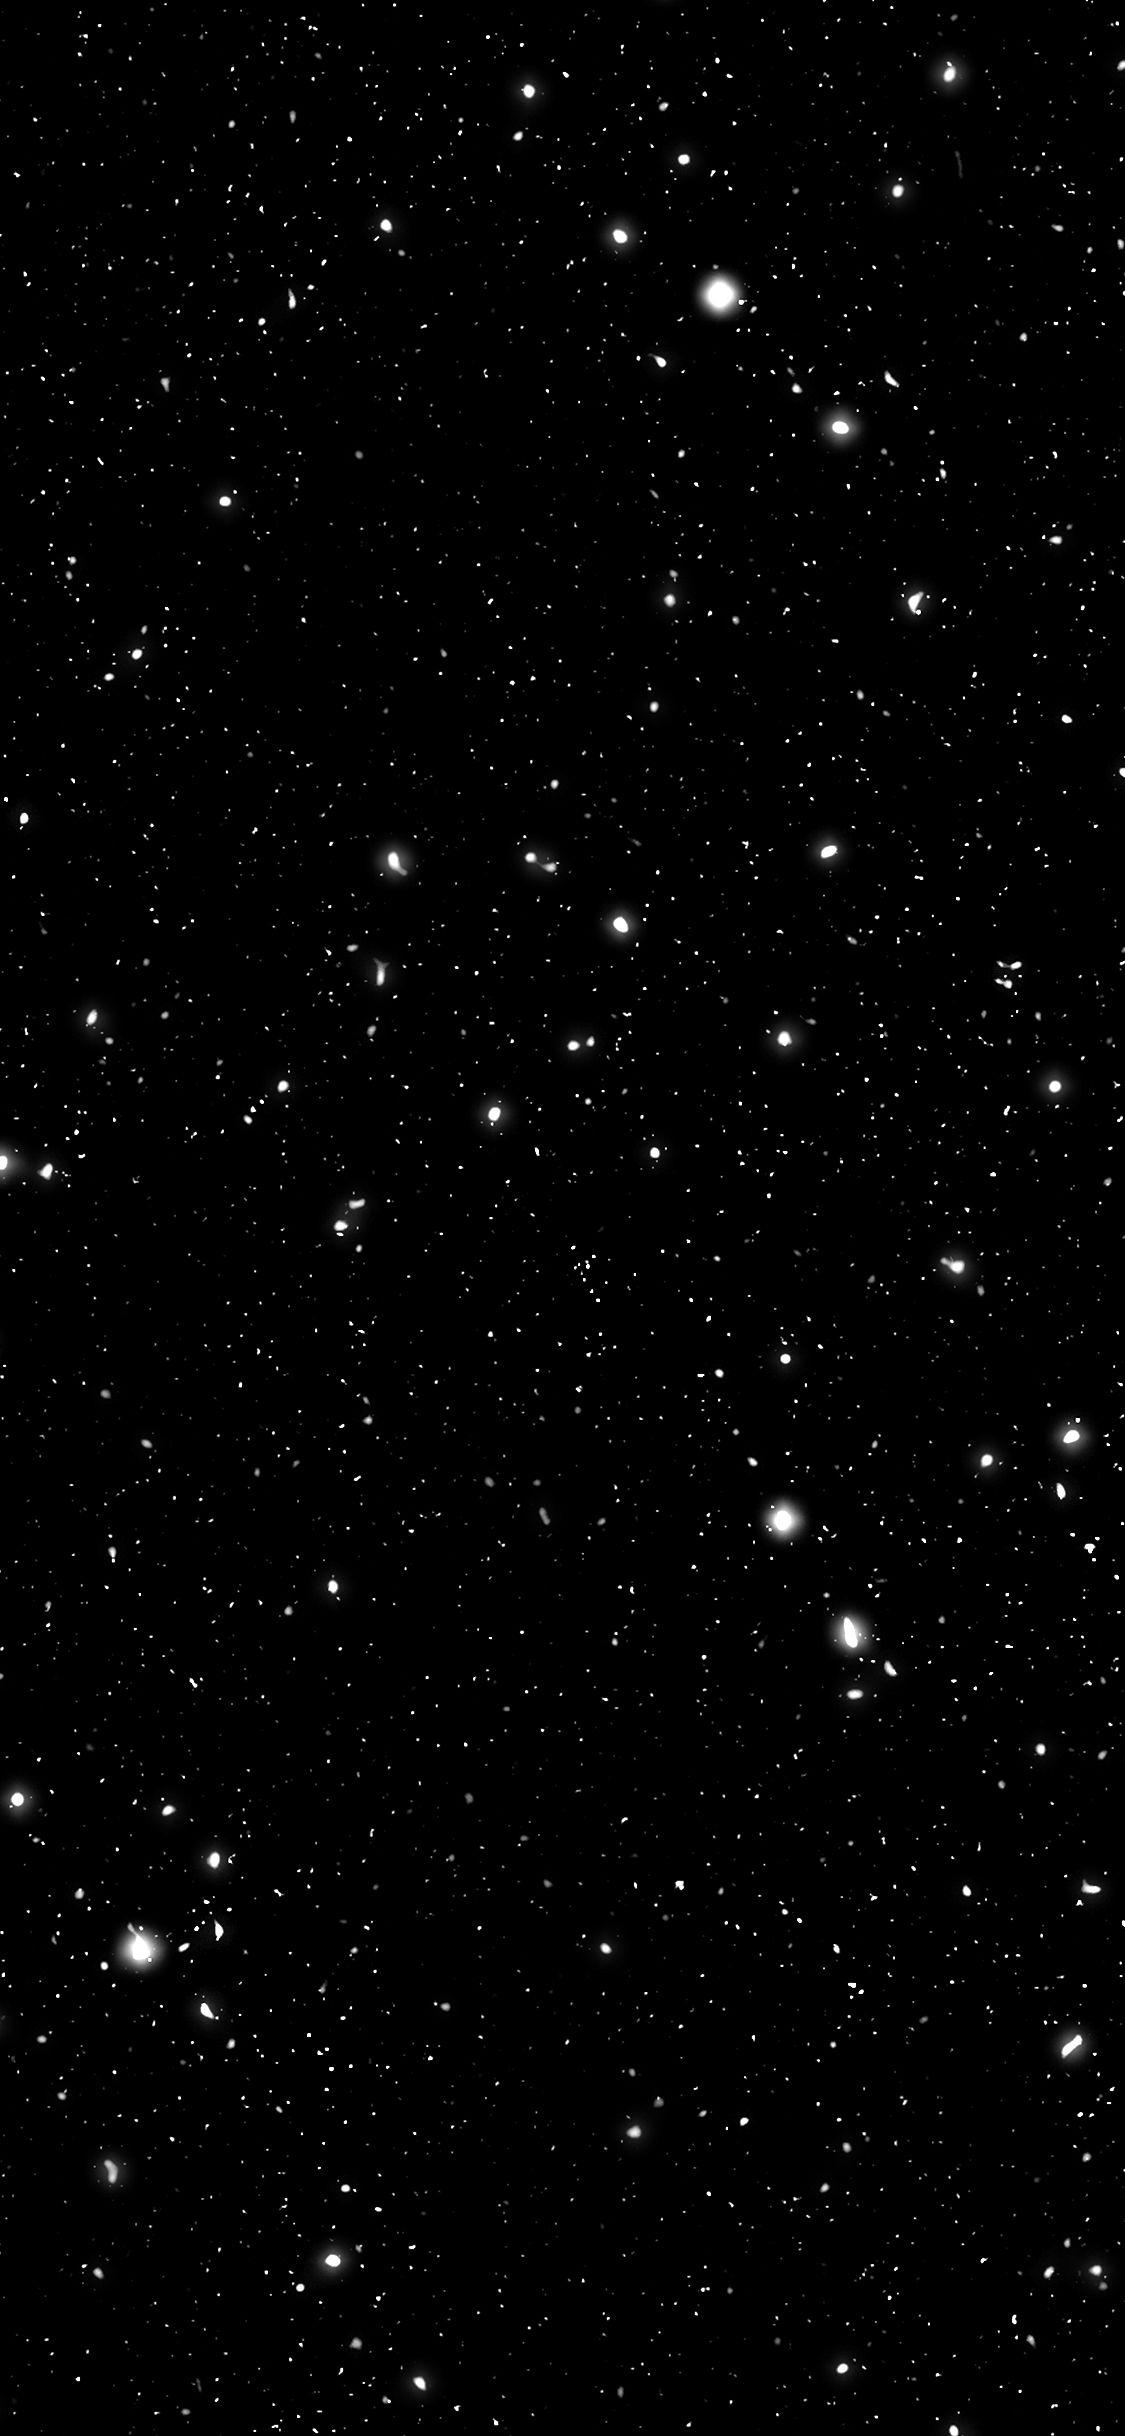 Bạn muốn tìm kiếm một hình nền độc đáo và mới lạ cho chiếc điện thoại của mình? Hãy thử với hình nền galaxy đen mới nhất vừa được cập nhật. Với những đốm sáng rực rỡ phát ra từ thiên hà đen tối, tạo nên một bản vẽ tuyệt đẹp trên màn hình điện thoại của bạn. Hãy tải ngay nhé!